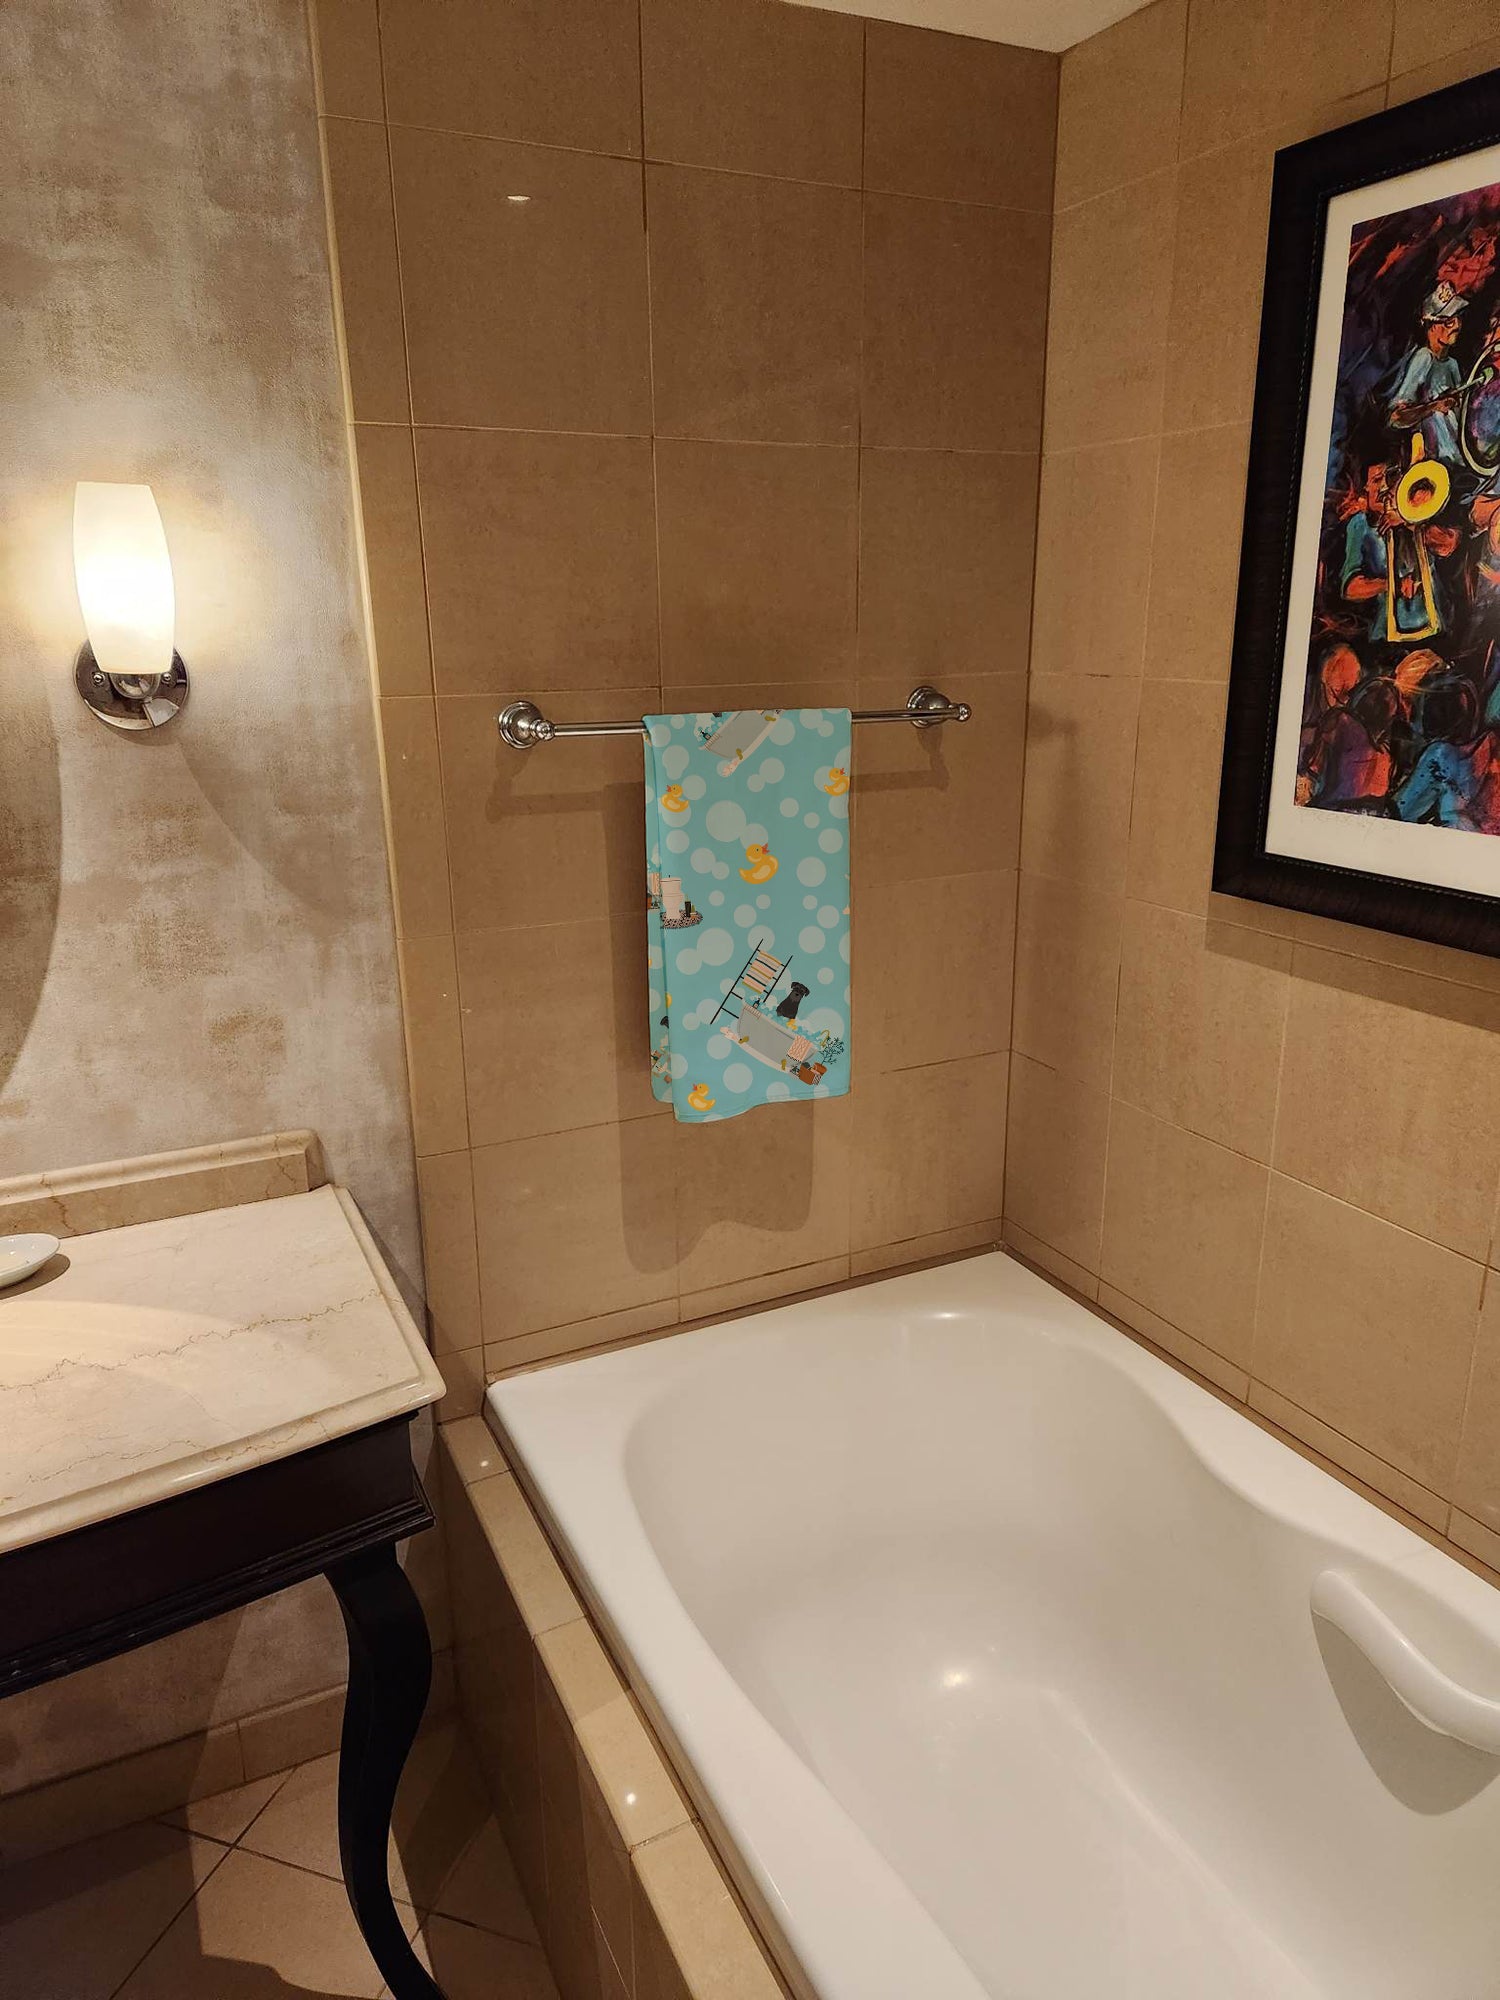 Buy this Black Standard Schnauzer in Bathtub Bath Towel Large